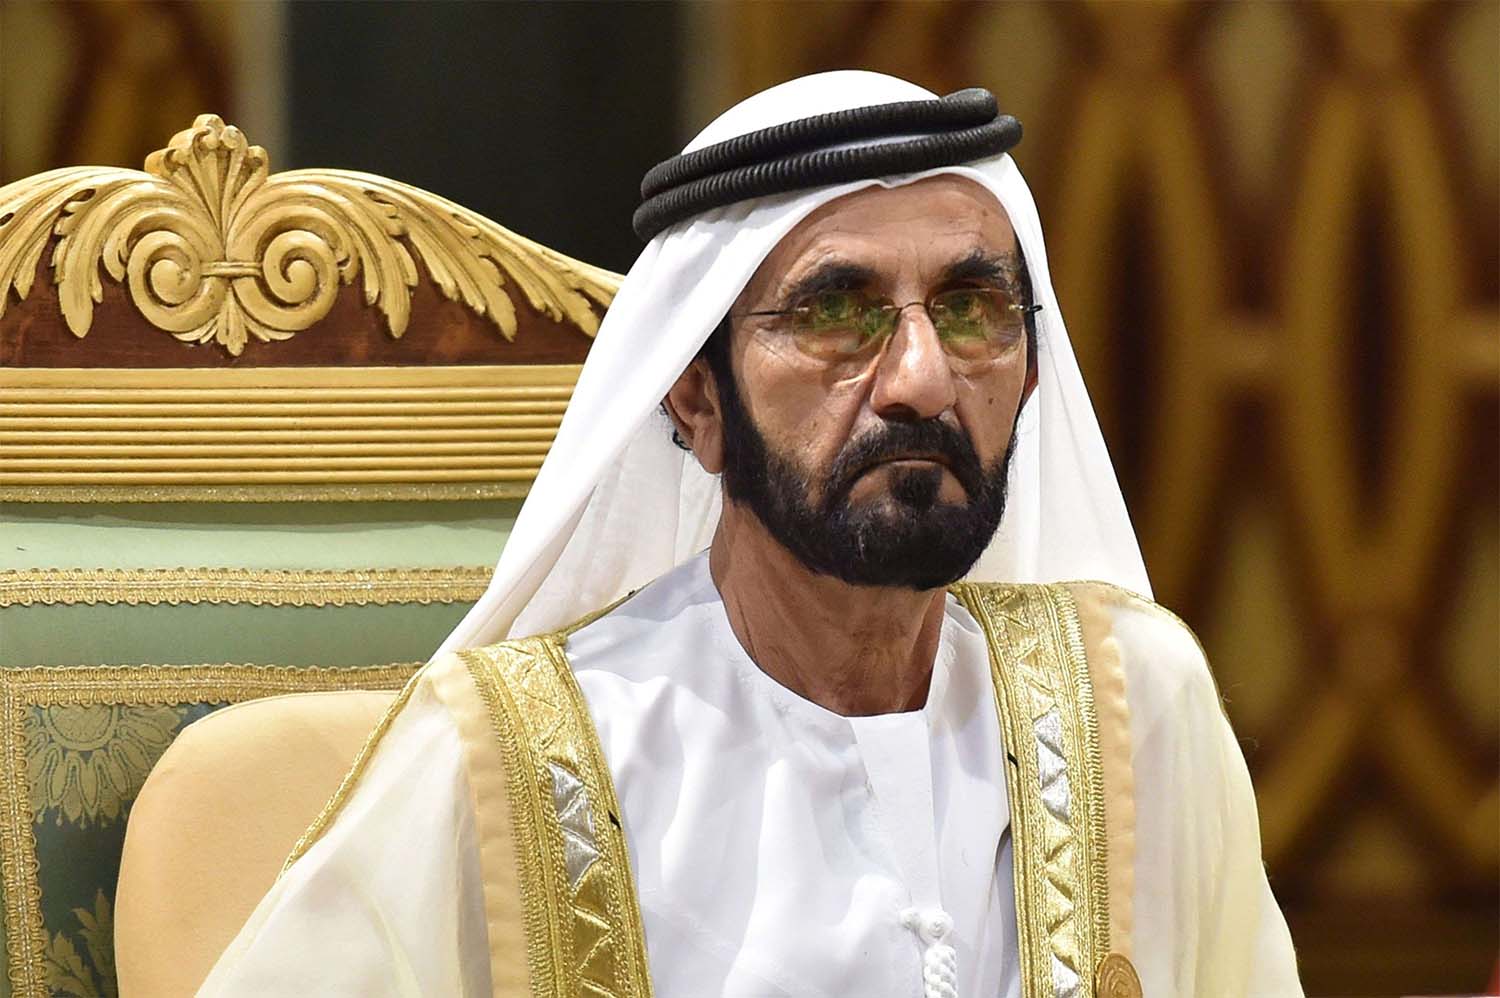 Sheikh Mohammed bin Rashid Al Maktoum, UAE Prime Minister and Vice-President and ruler of Dubai